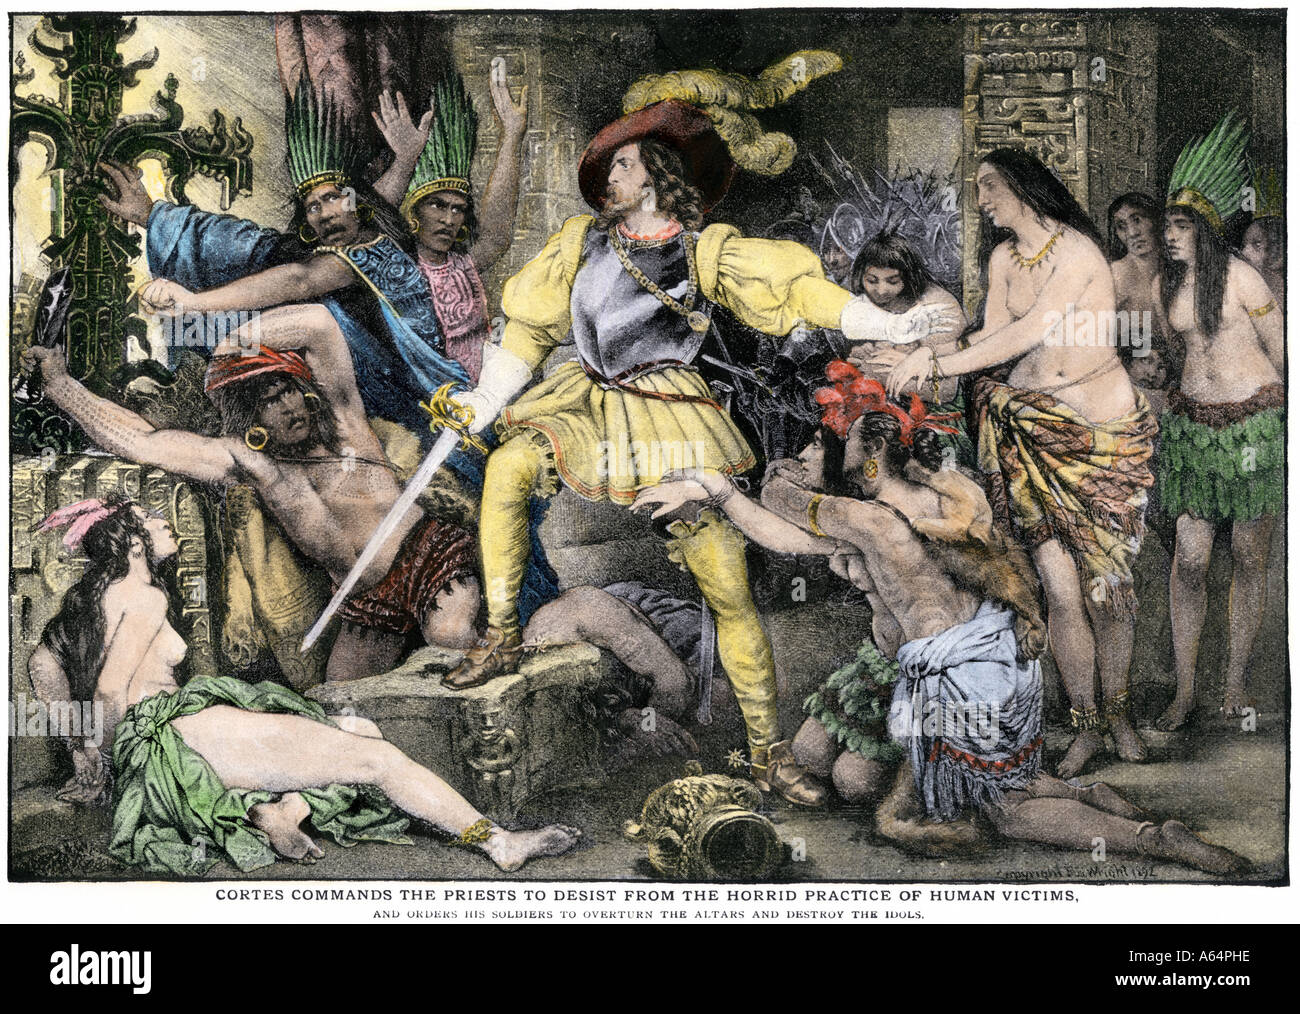 Hernando Cortes Bestellungen ein Ende der Azteken Praxis der menschlichen Opfer nach der spanischen Eroberung von Mexiko Stadt. Handcolorierte halftone einer Abbildung Stockfoto